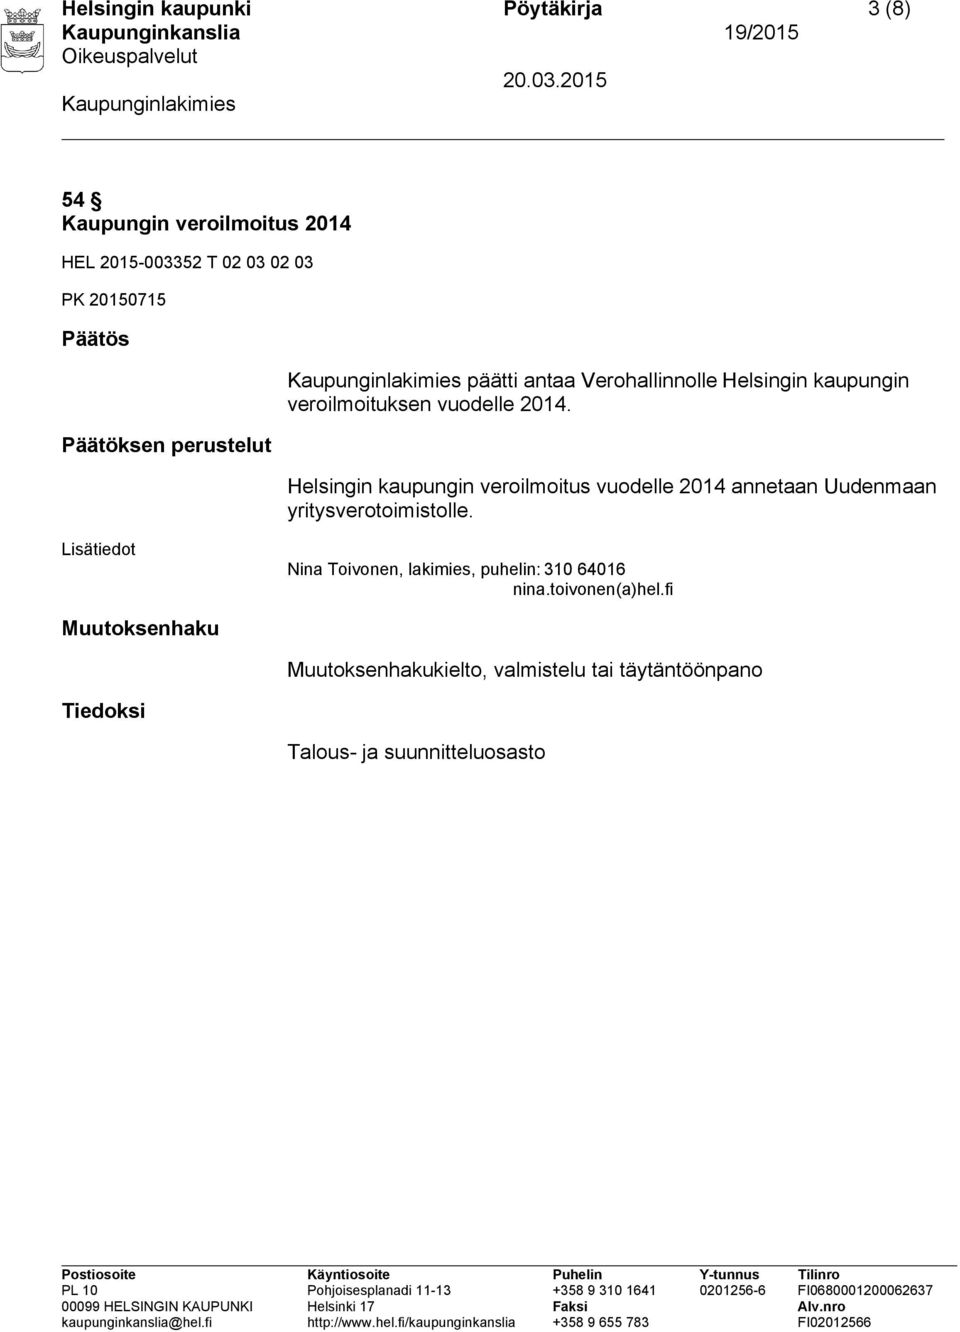 Helsingin kaupungin veroilmoitus vuodelle 2014 annetaan Uudenmaan yritysverotoimistolle.